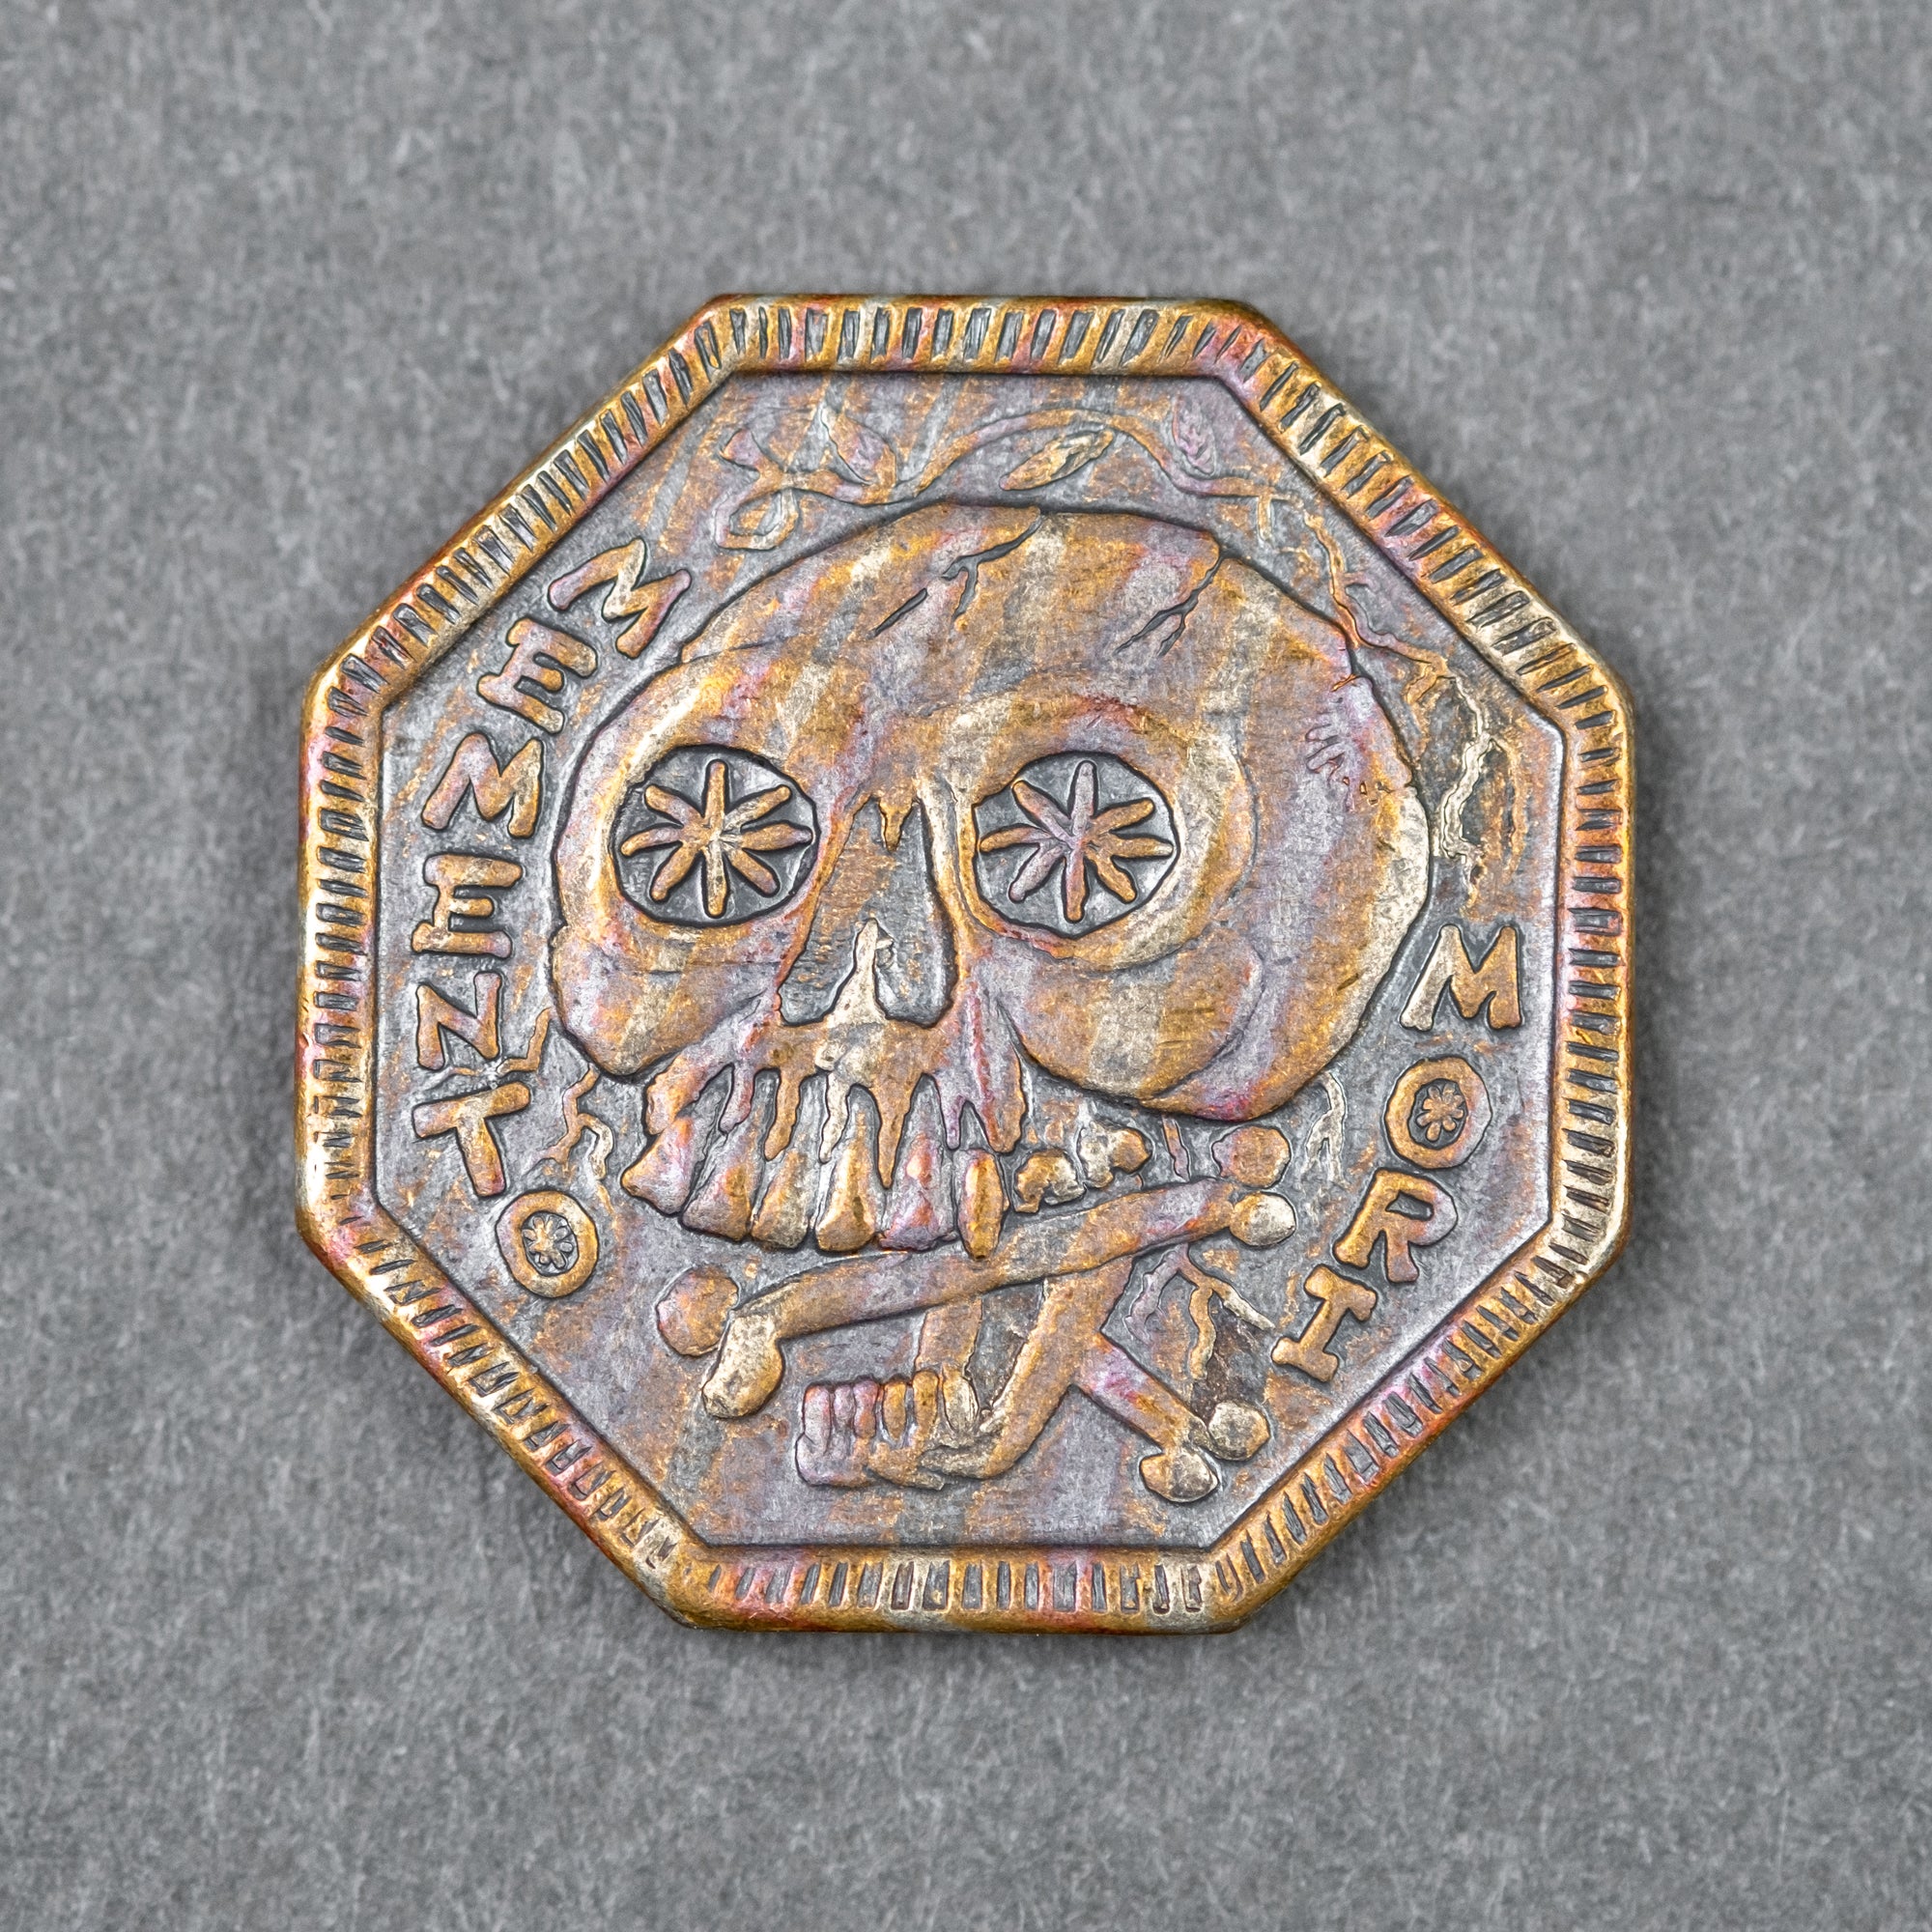 Shire Post Mint Memento Mori Coin | Worry Coin | Urban EDC Supply